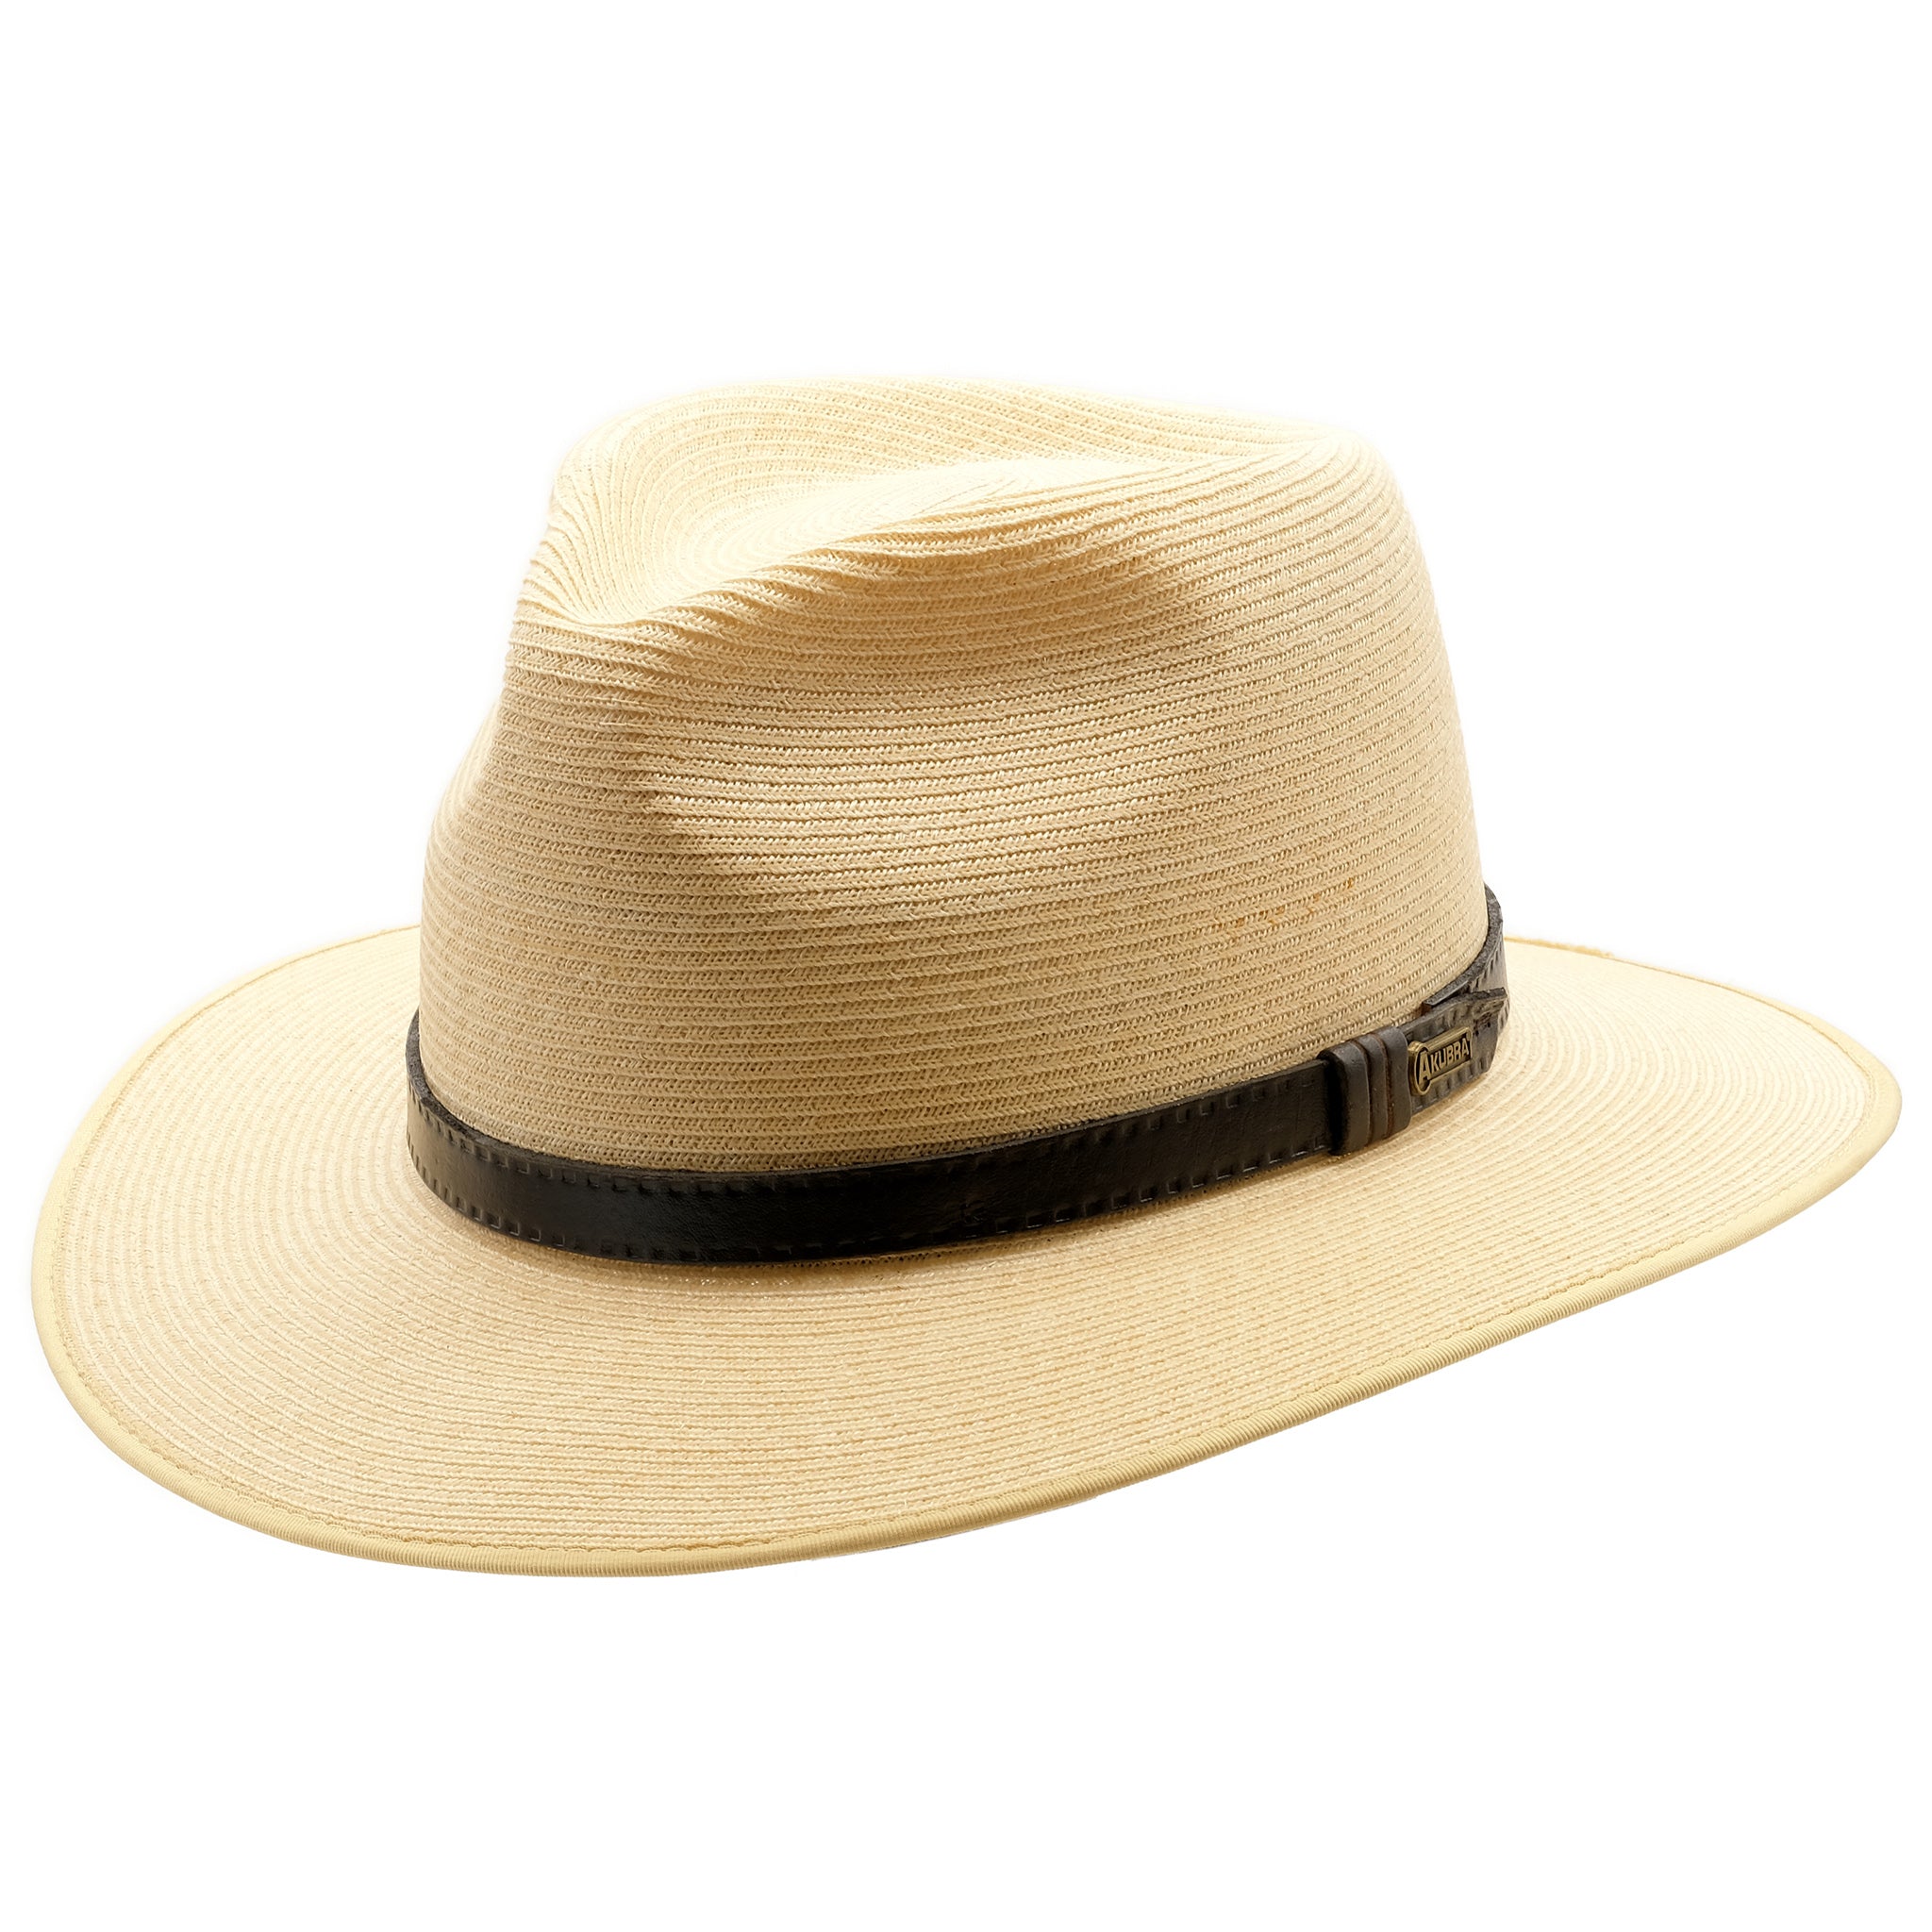 Angle view of Akubra Balmoral hat